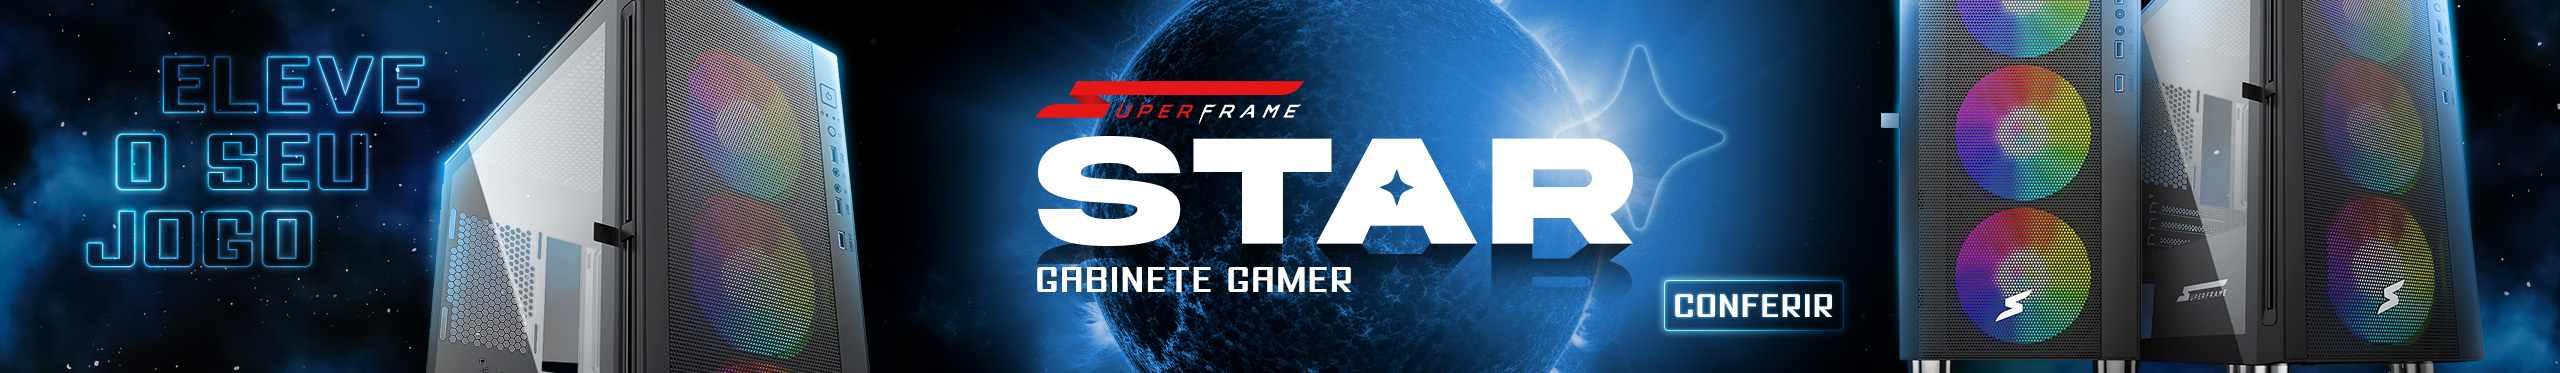 Gabinete Gamer SuperFrame Star | Deixe seu setup brilhando. Saiba mais!